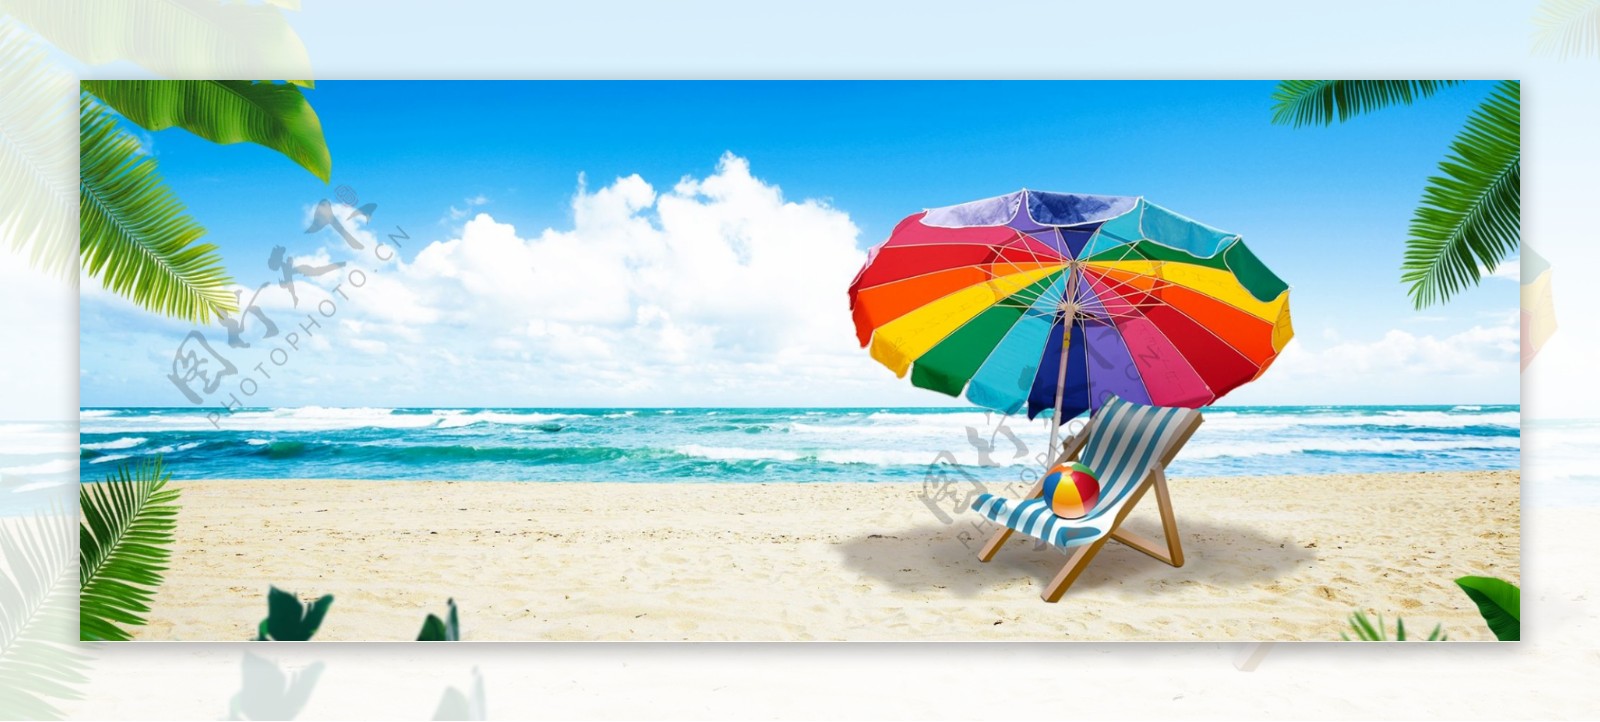 海边椰子树沙滩椅遮阳伞banner背景